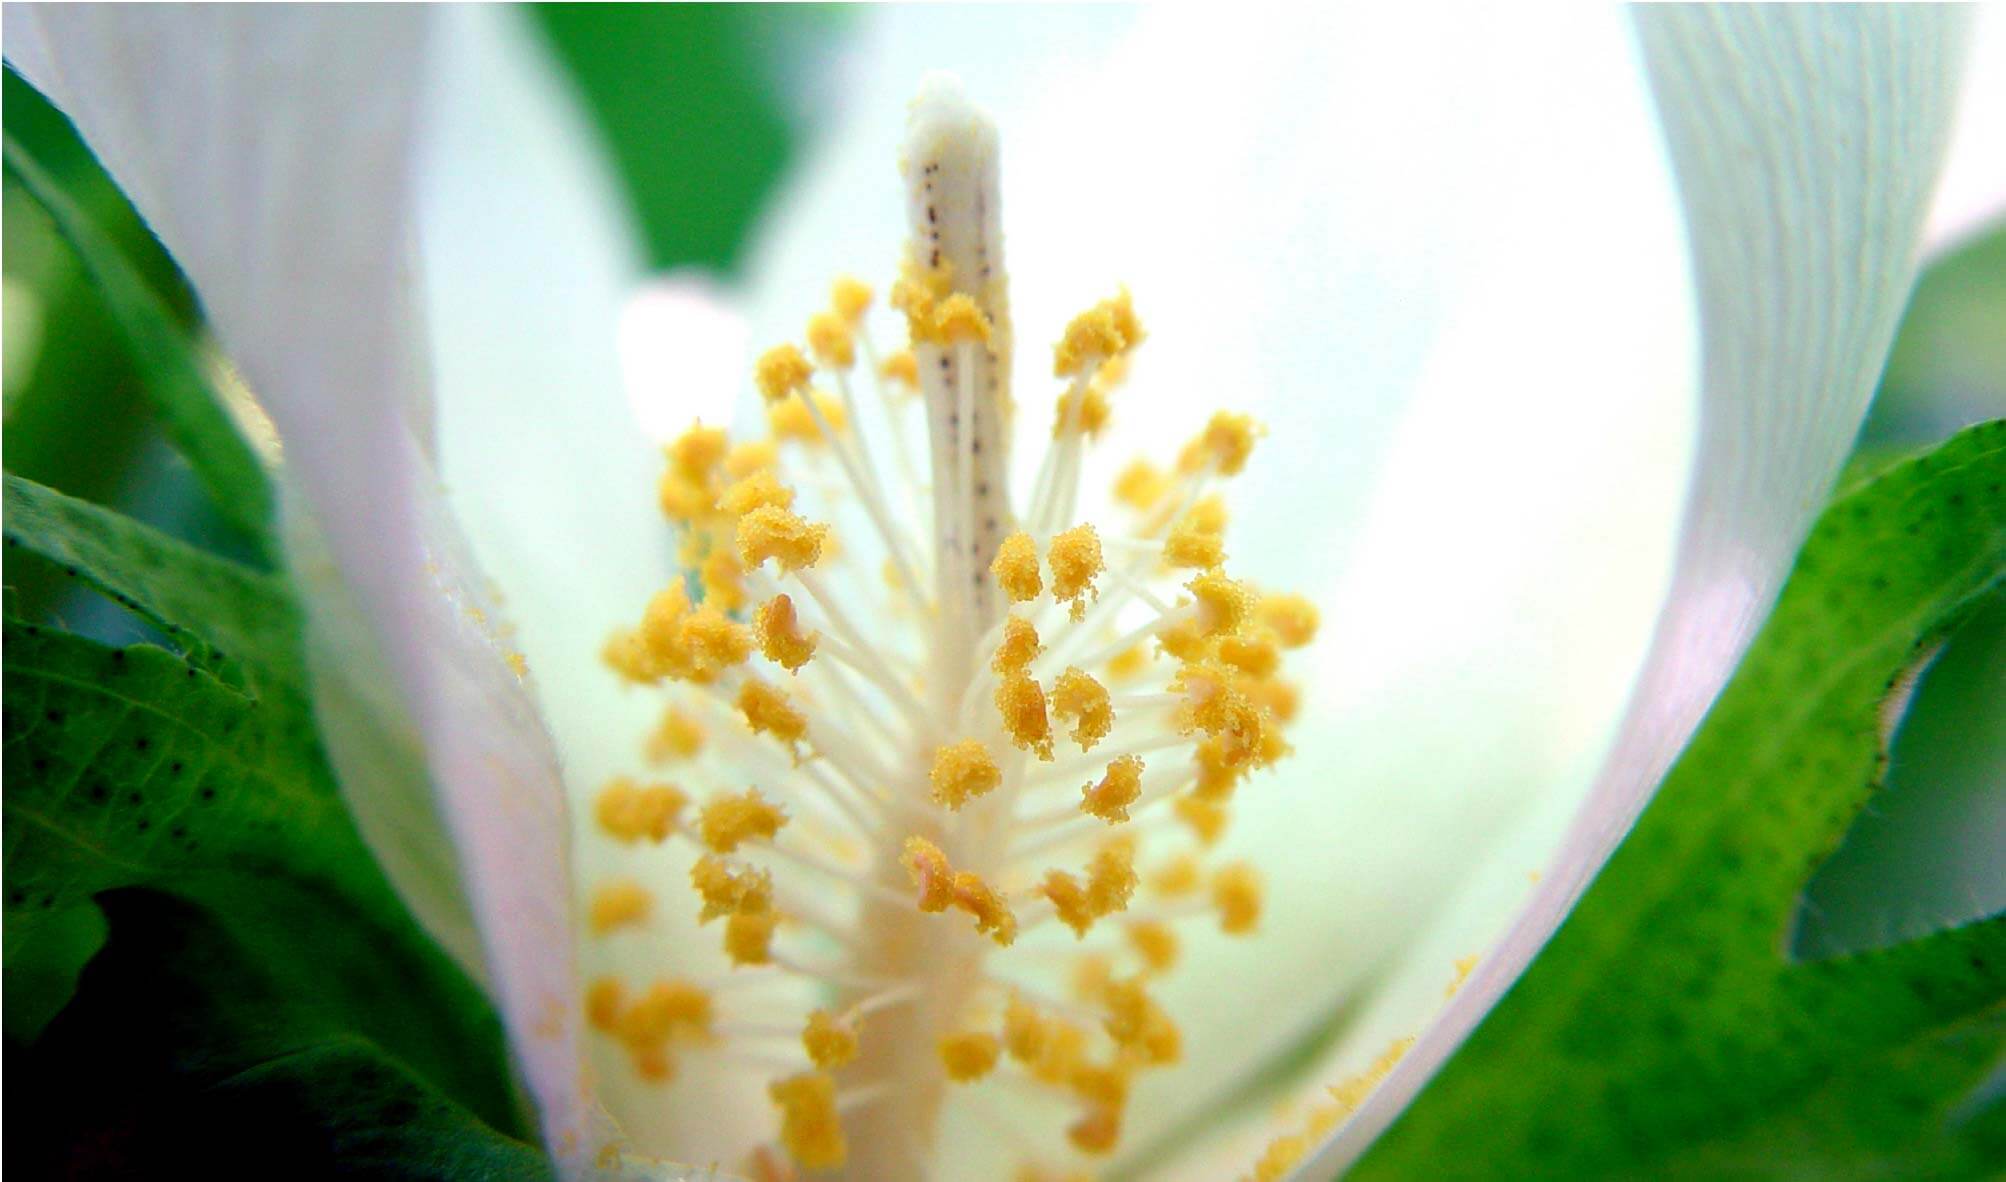 Cotton Flower Development